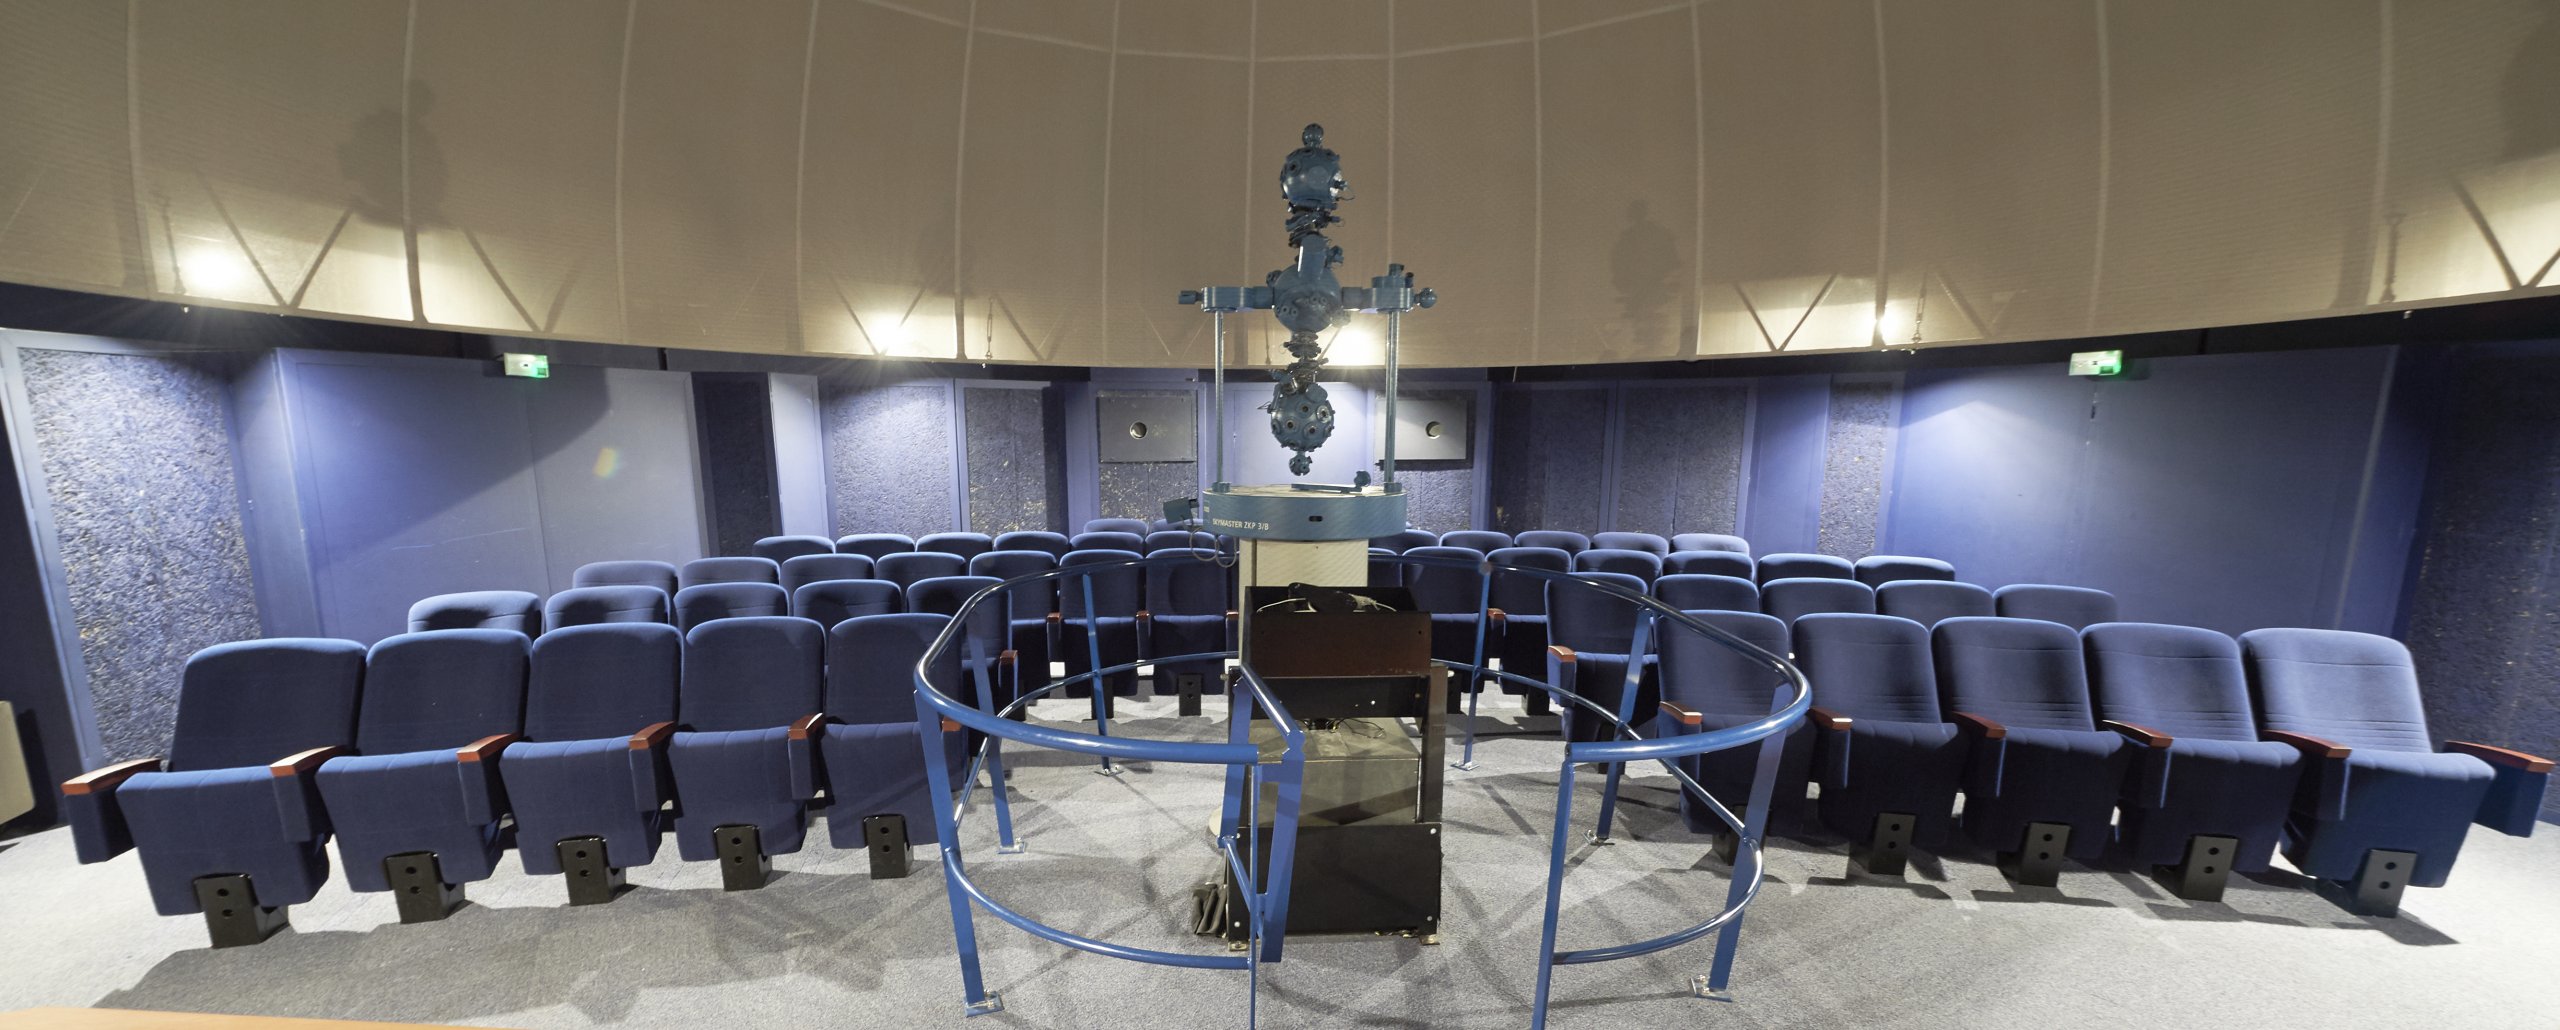 kleslo-planetarium-fauteuils pour salle multifonction